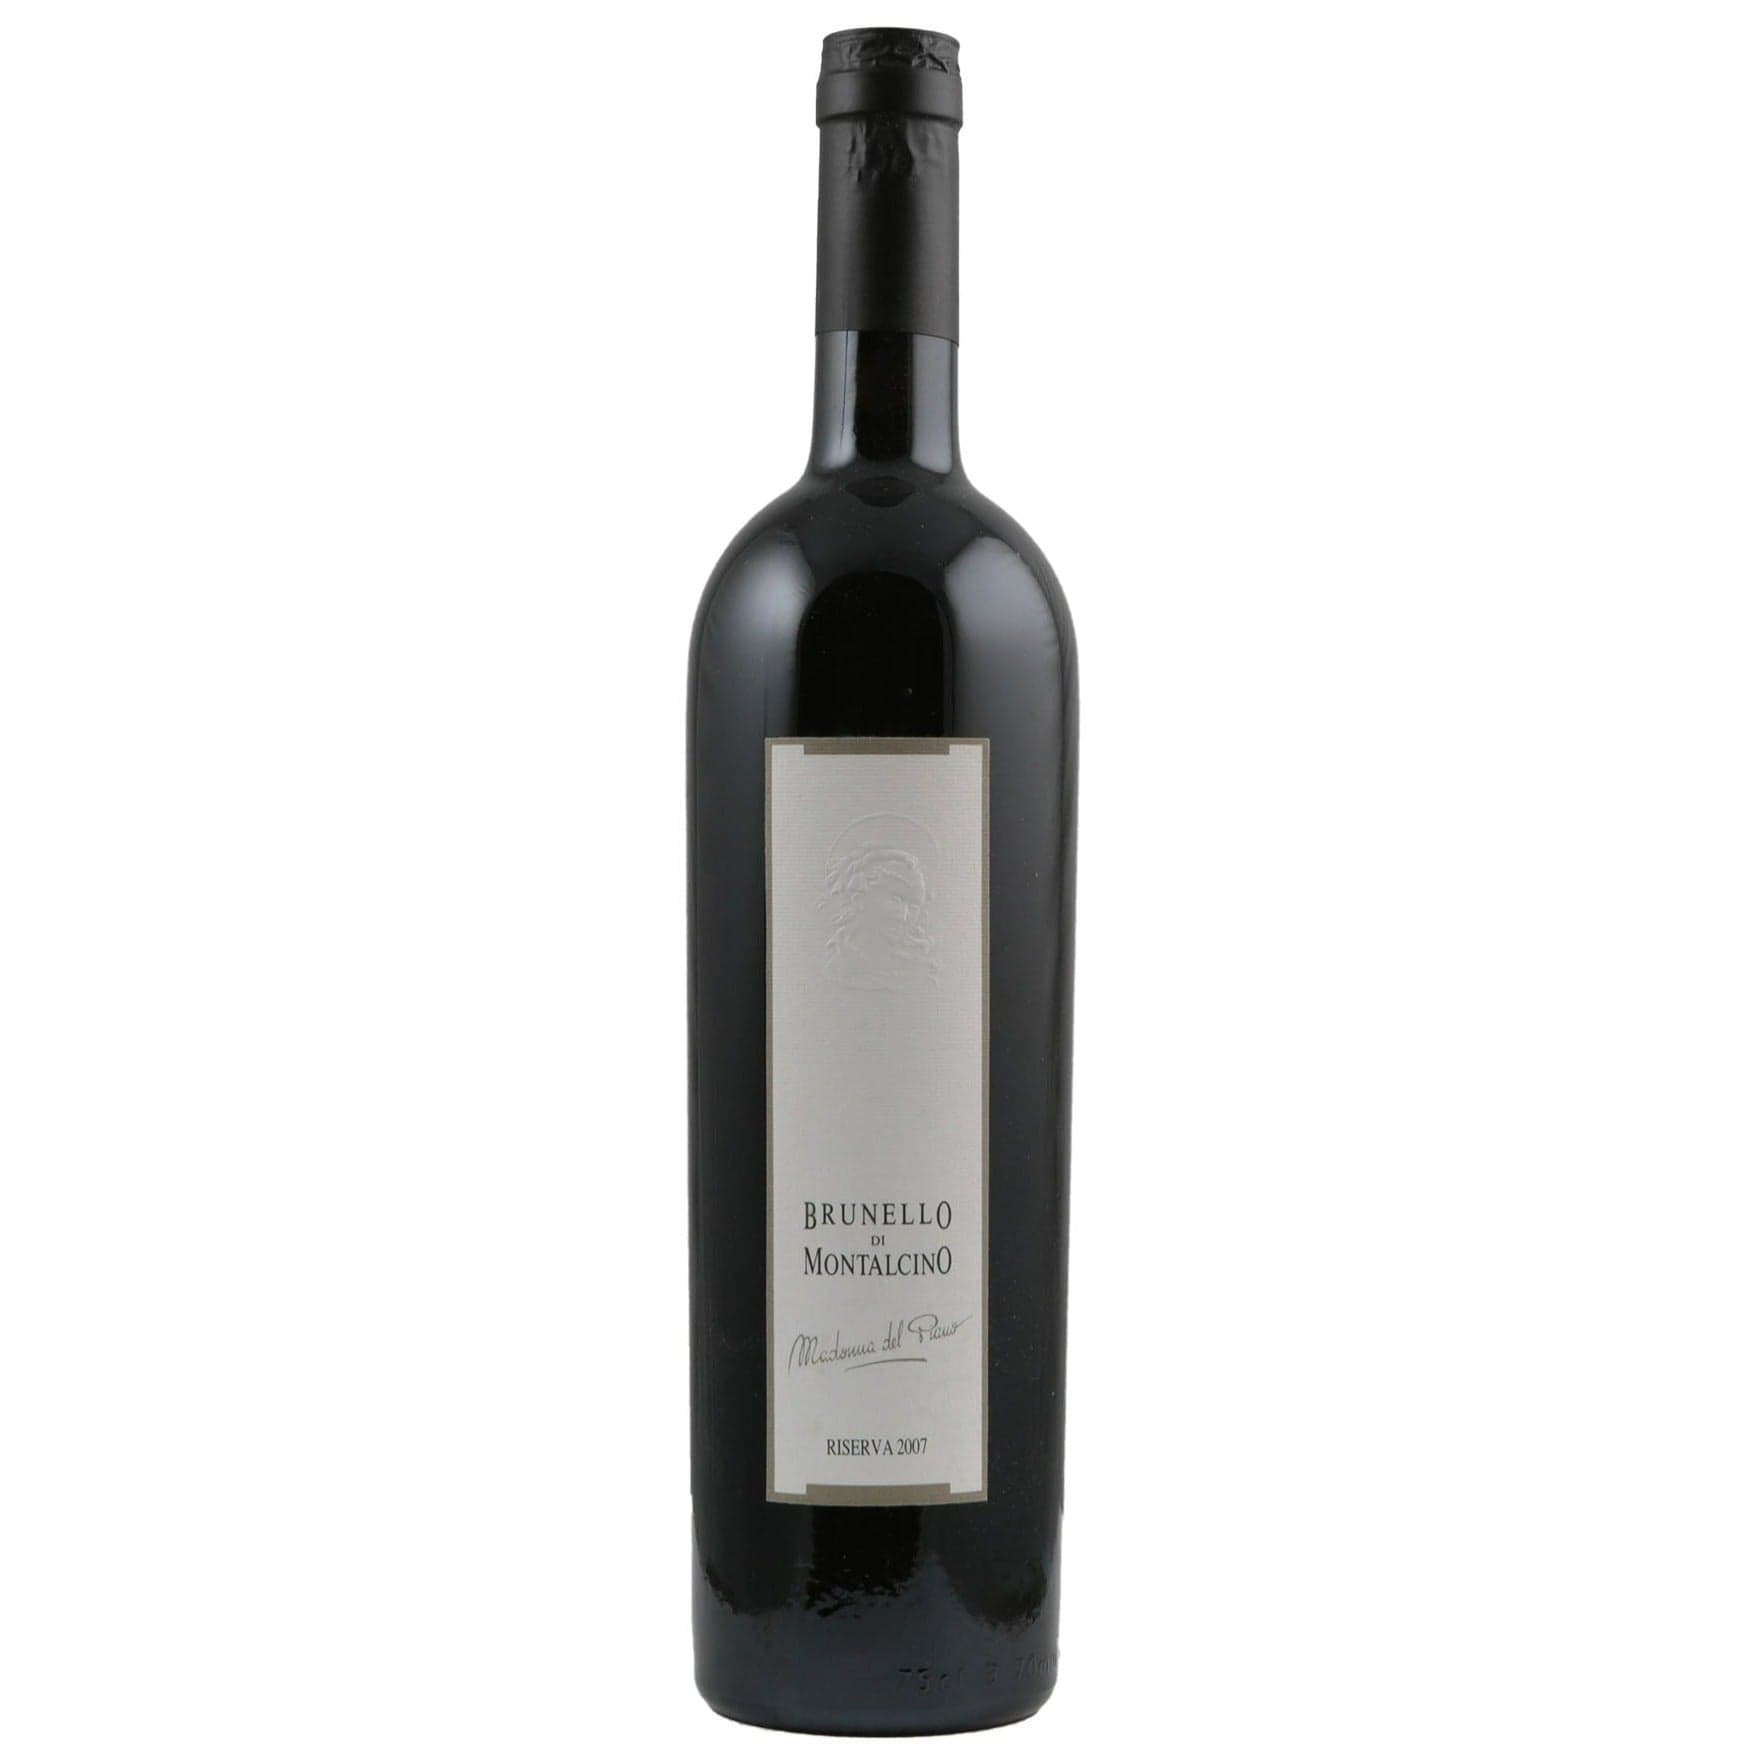 Single bottle of Red wine Valdicava, Madonna del Piano Riserva, Brunello di Montalcino, 2007 100% Sangiovese